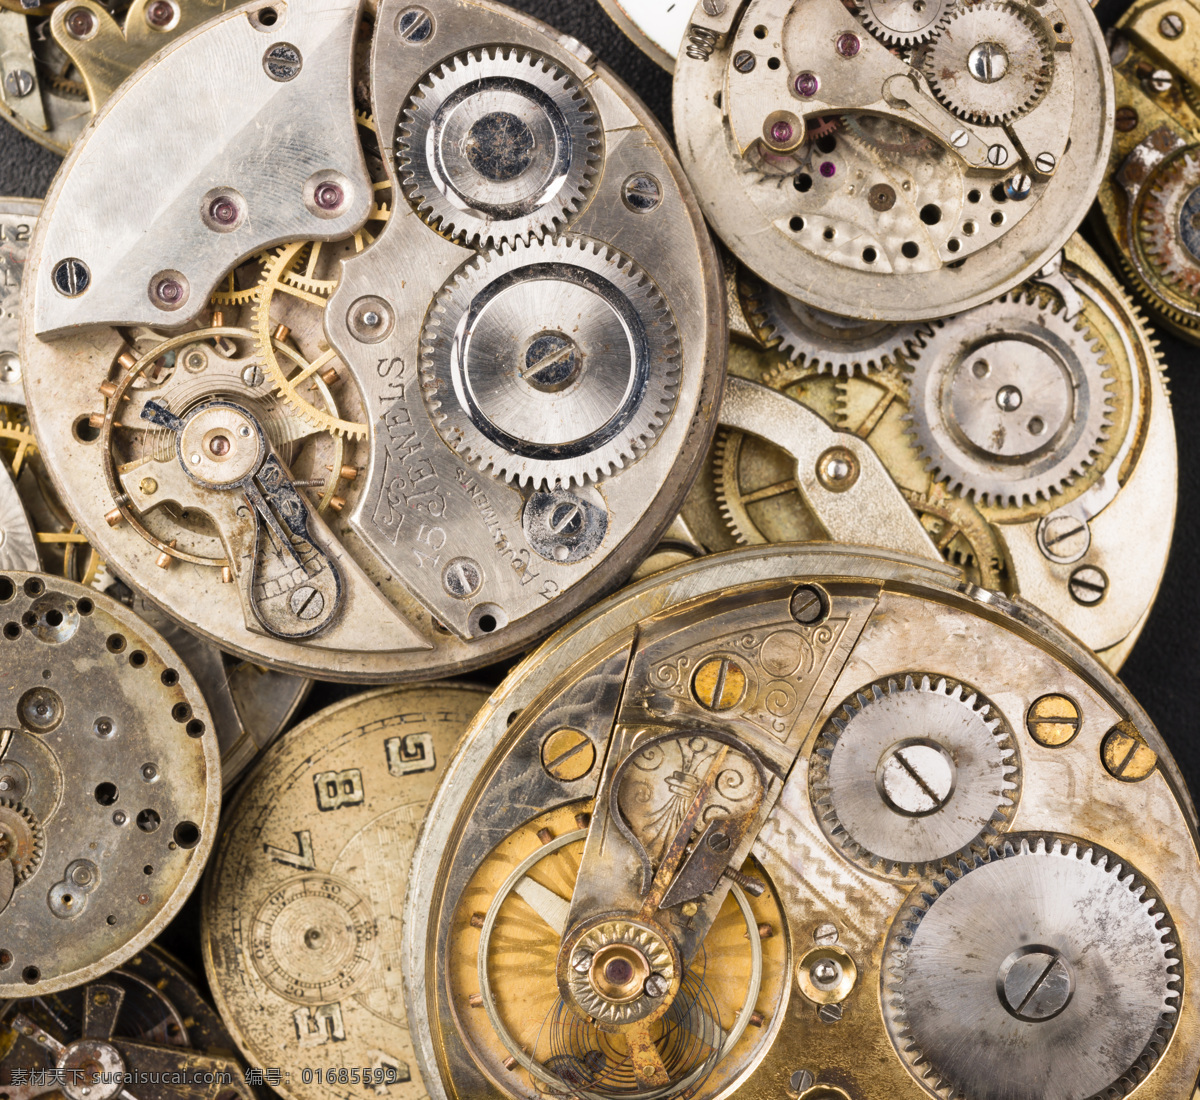 钟表 机械 齿轮 老式钟表 古老钟表 内部机械 机械表 钟表图片 生活百科